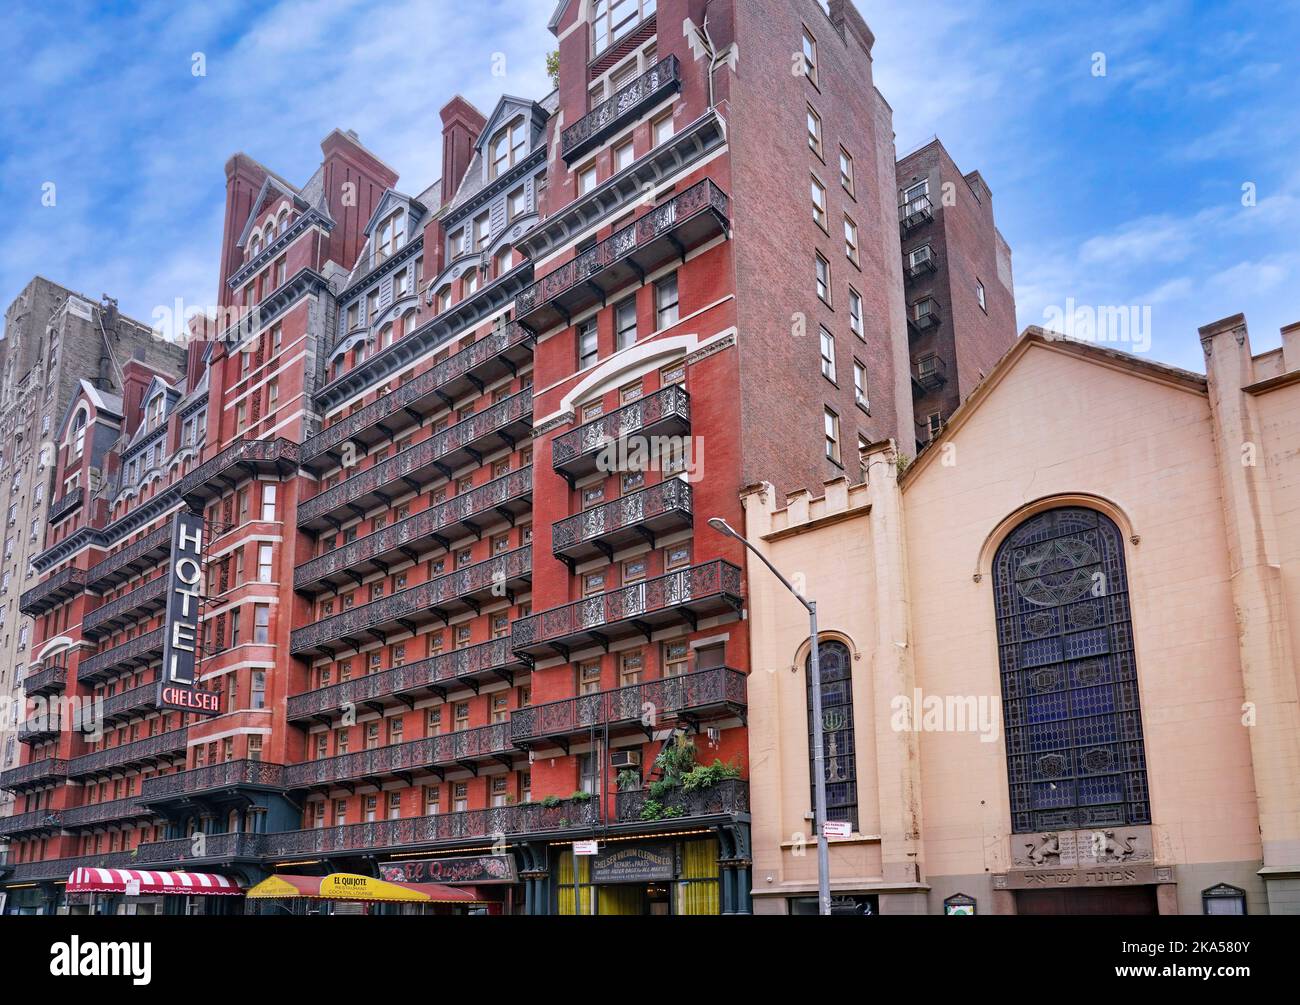 New York, NY - Oktober 2022: Das Hotel Chelsea in Manhattan wurde 1880s erbaut und war die ehemalige Residenz vieler berühmter Schriftsteller und Künstler Stockfoto